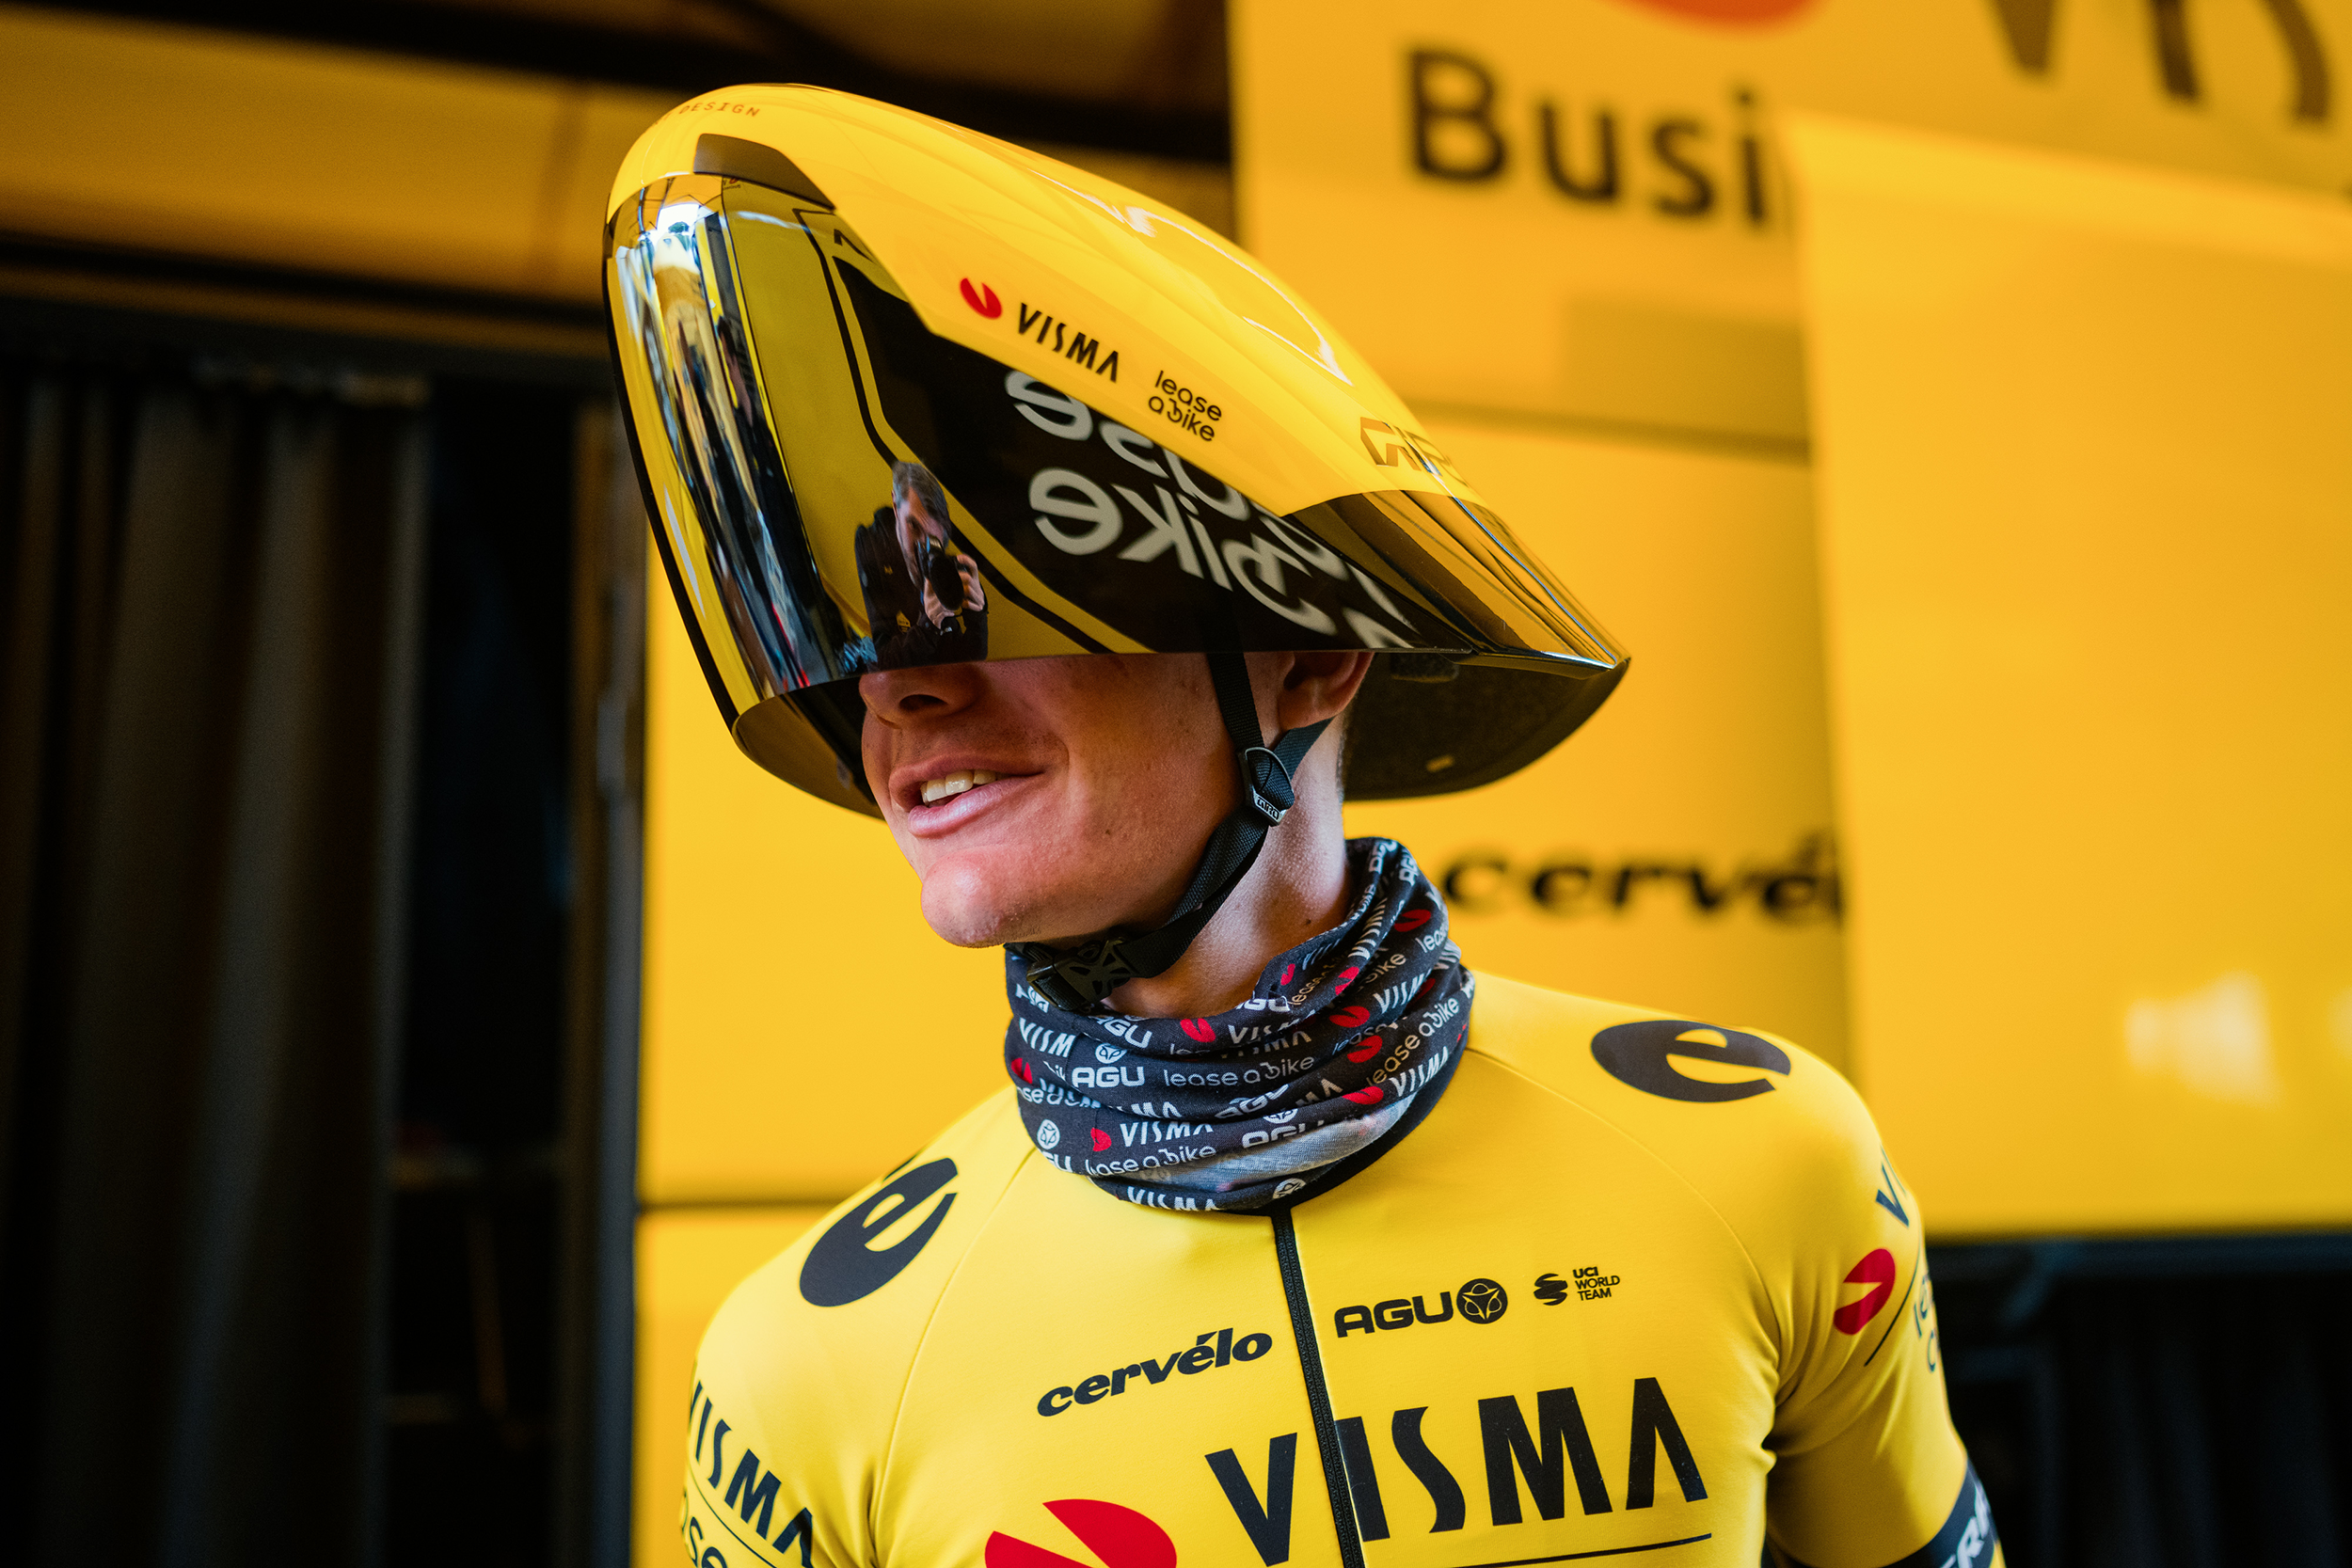 Visma Lease a Bike riders dans un nouveau casque Giro TT sauvage